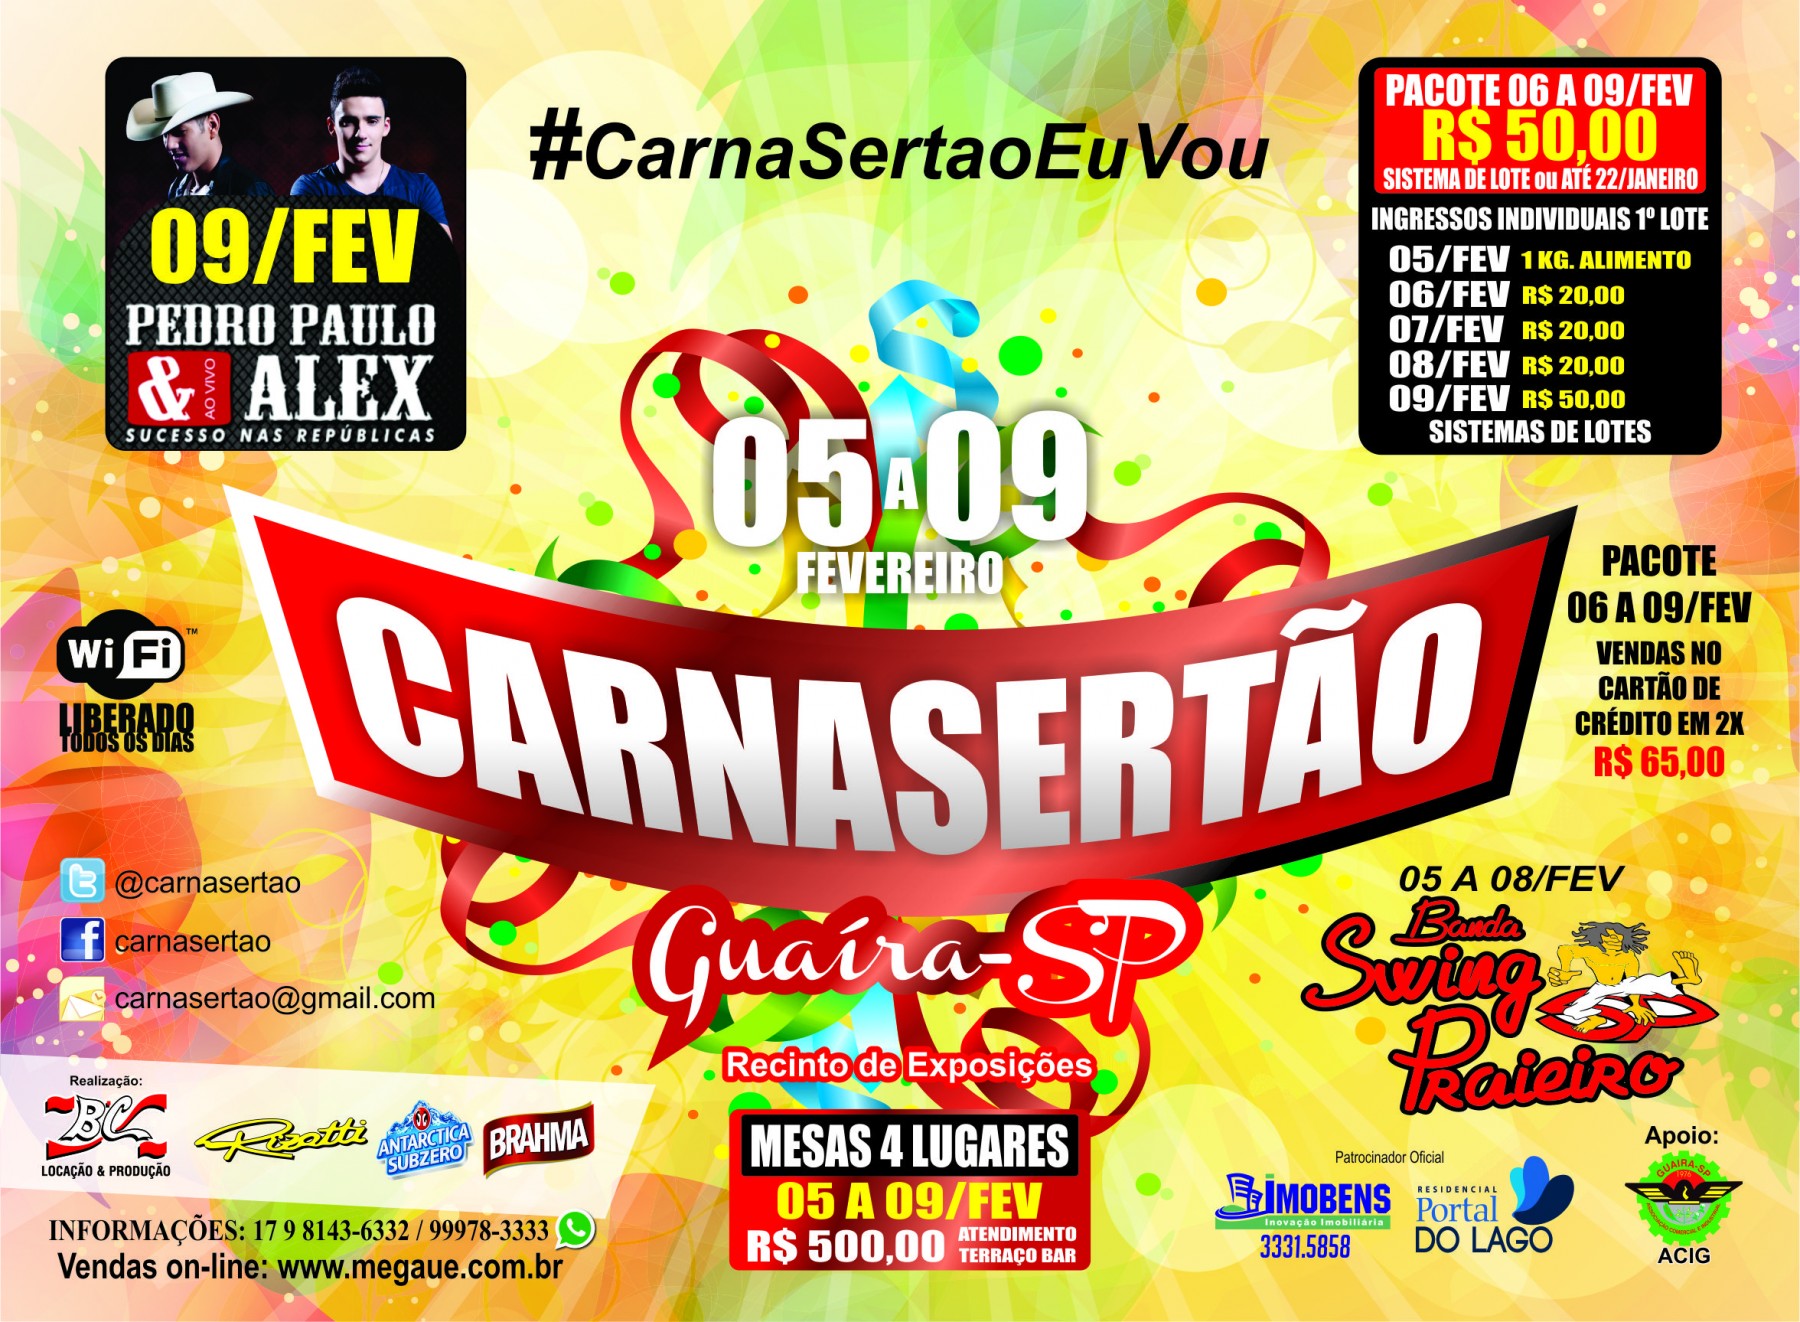 Carnasertao_2015 (1)